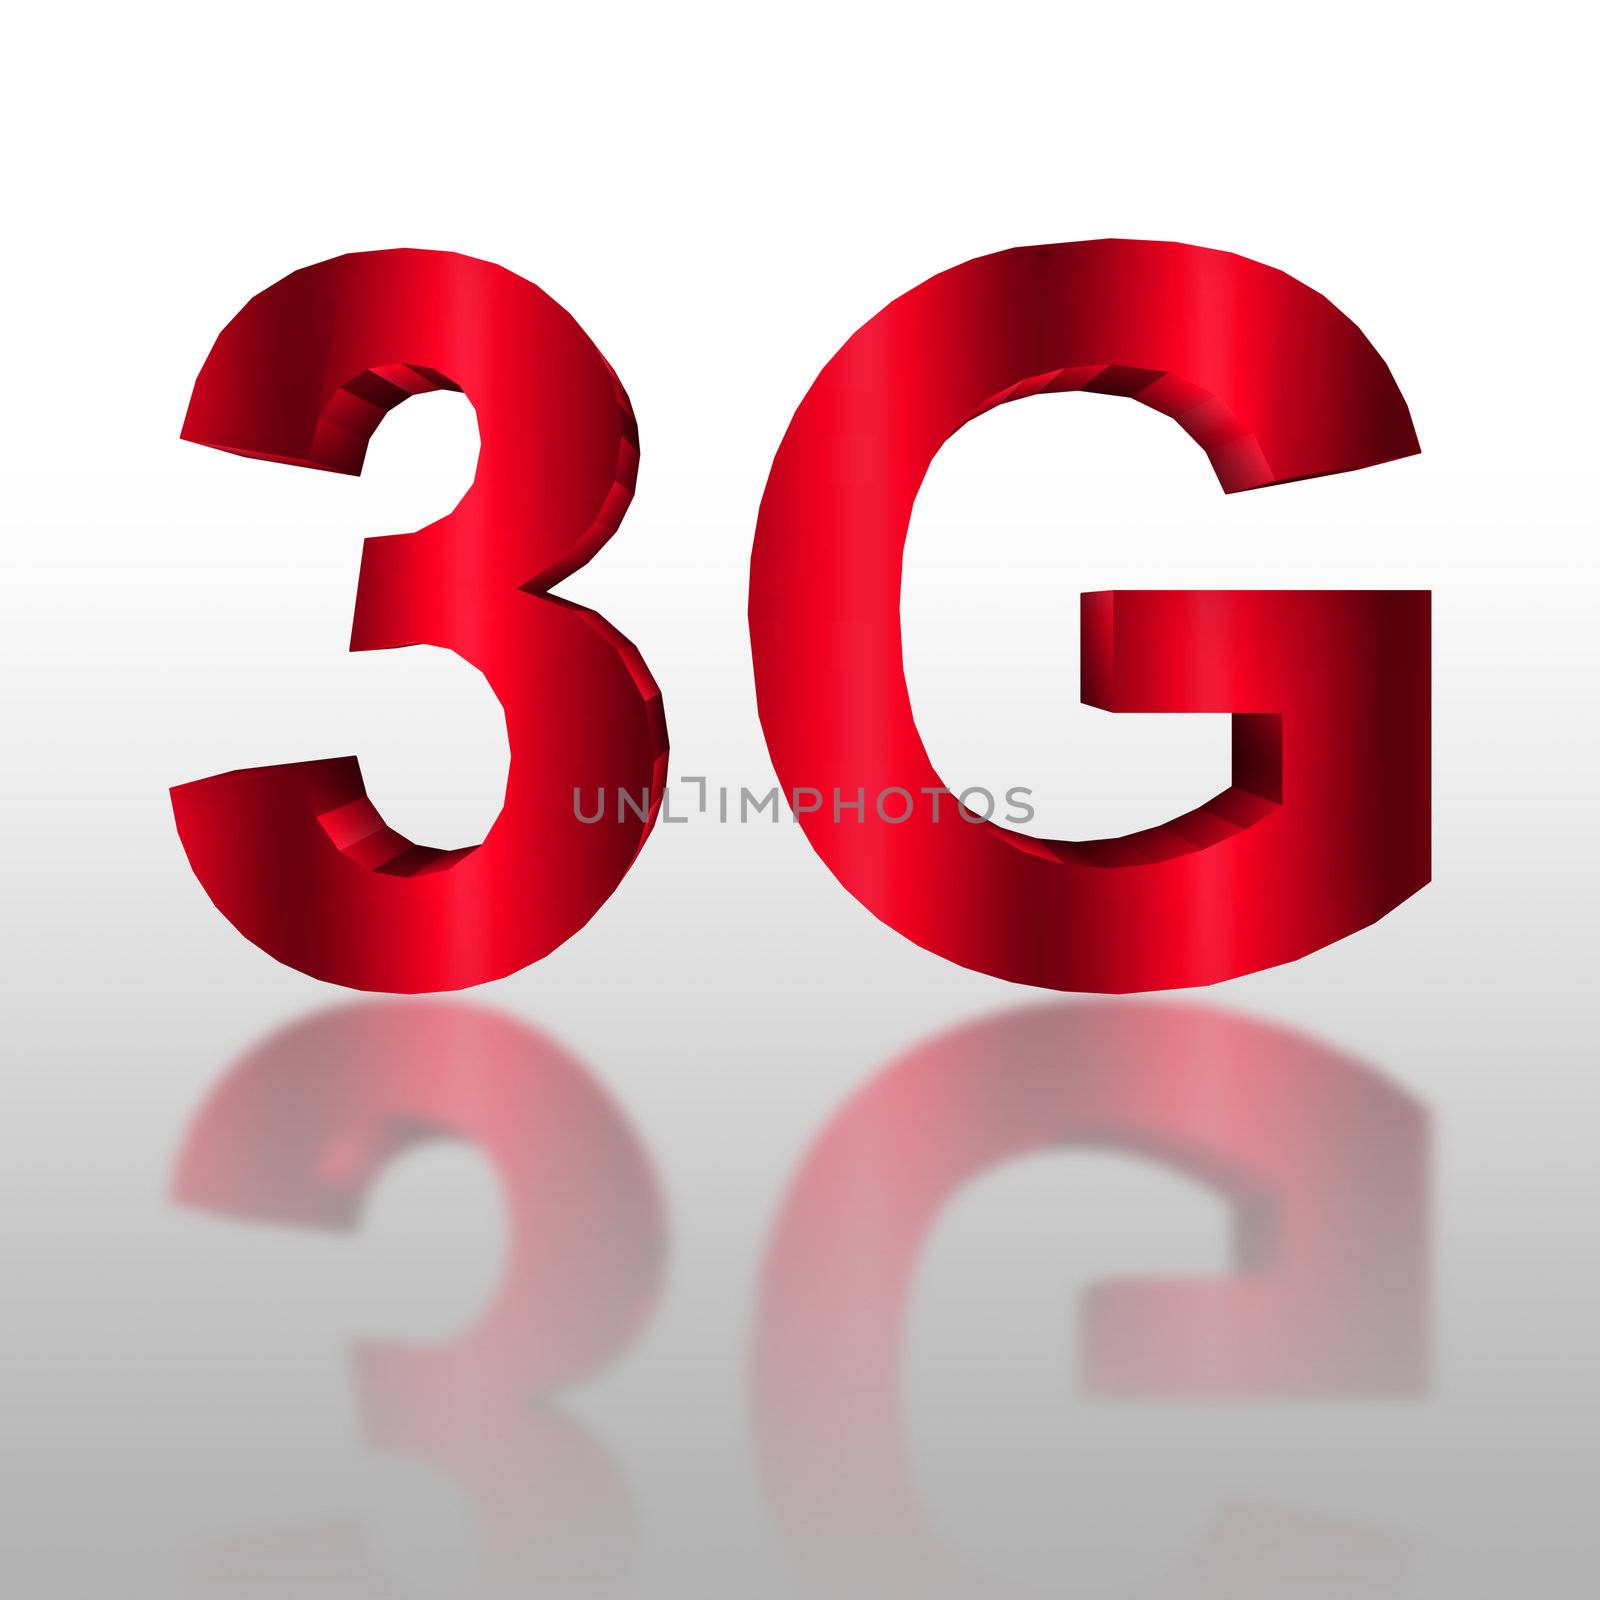 3G symbol  by geargodz